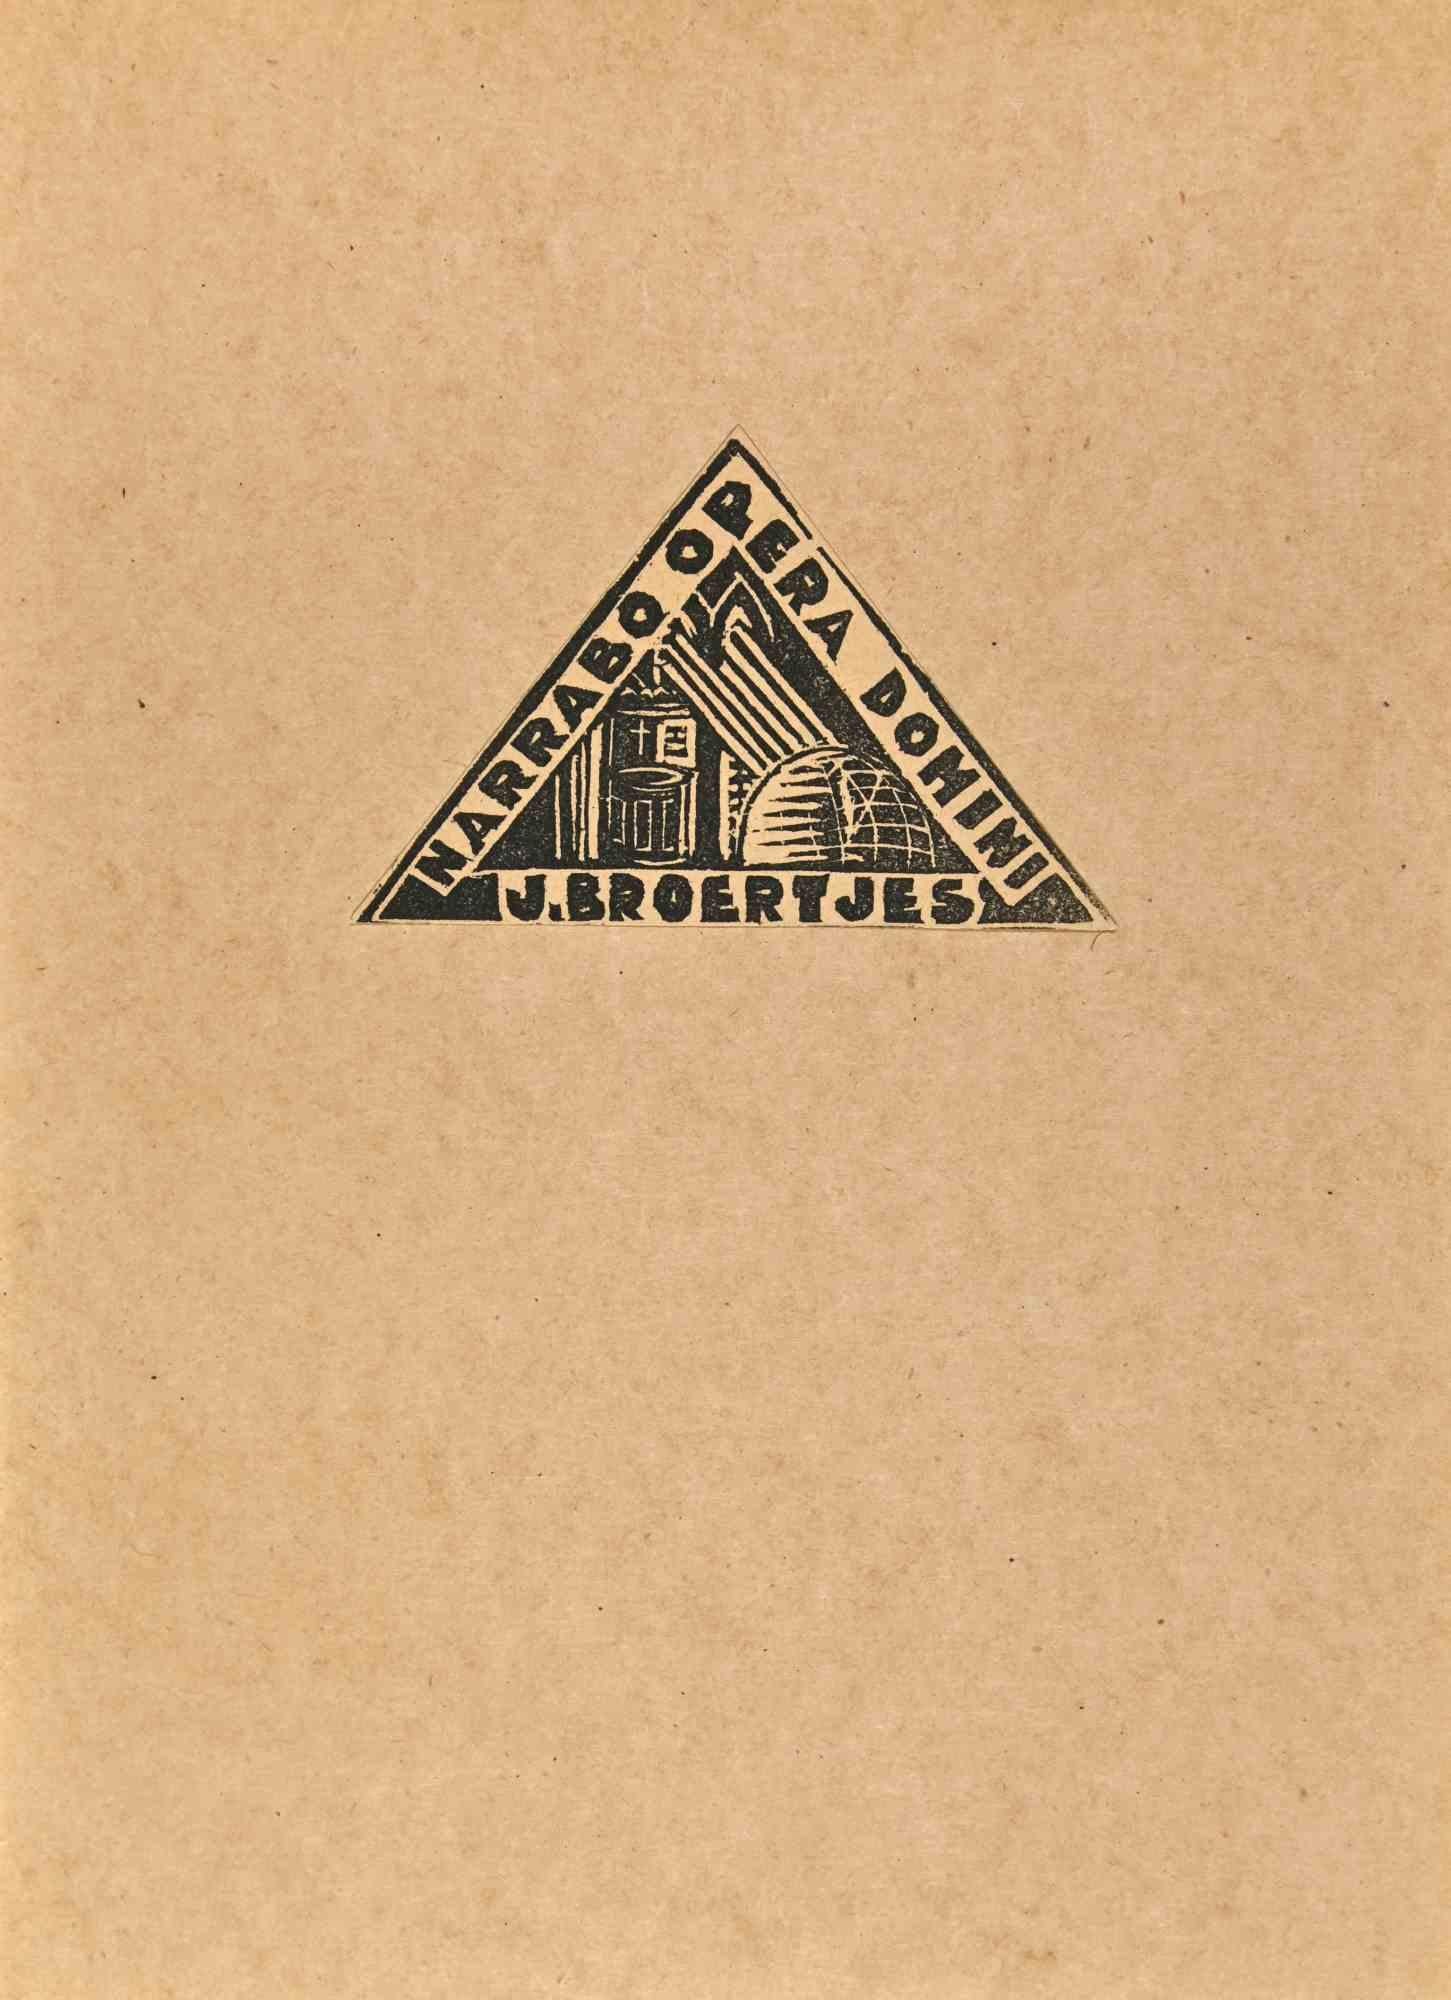  Ex Libris - J. Broertjes - Holzschnitt - Mitte des 20. Jahrhunderts – Art von Unknown